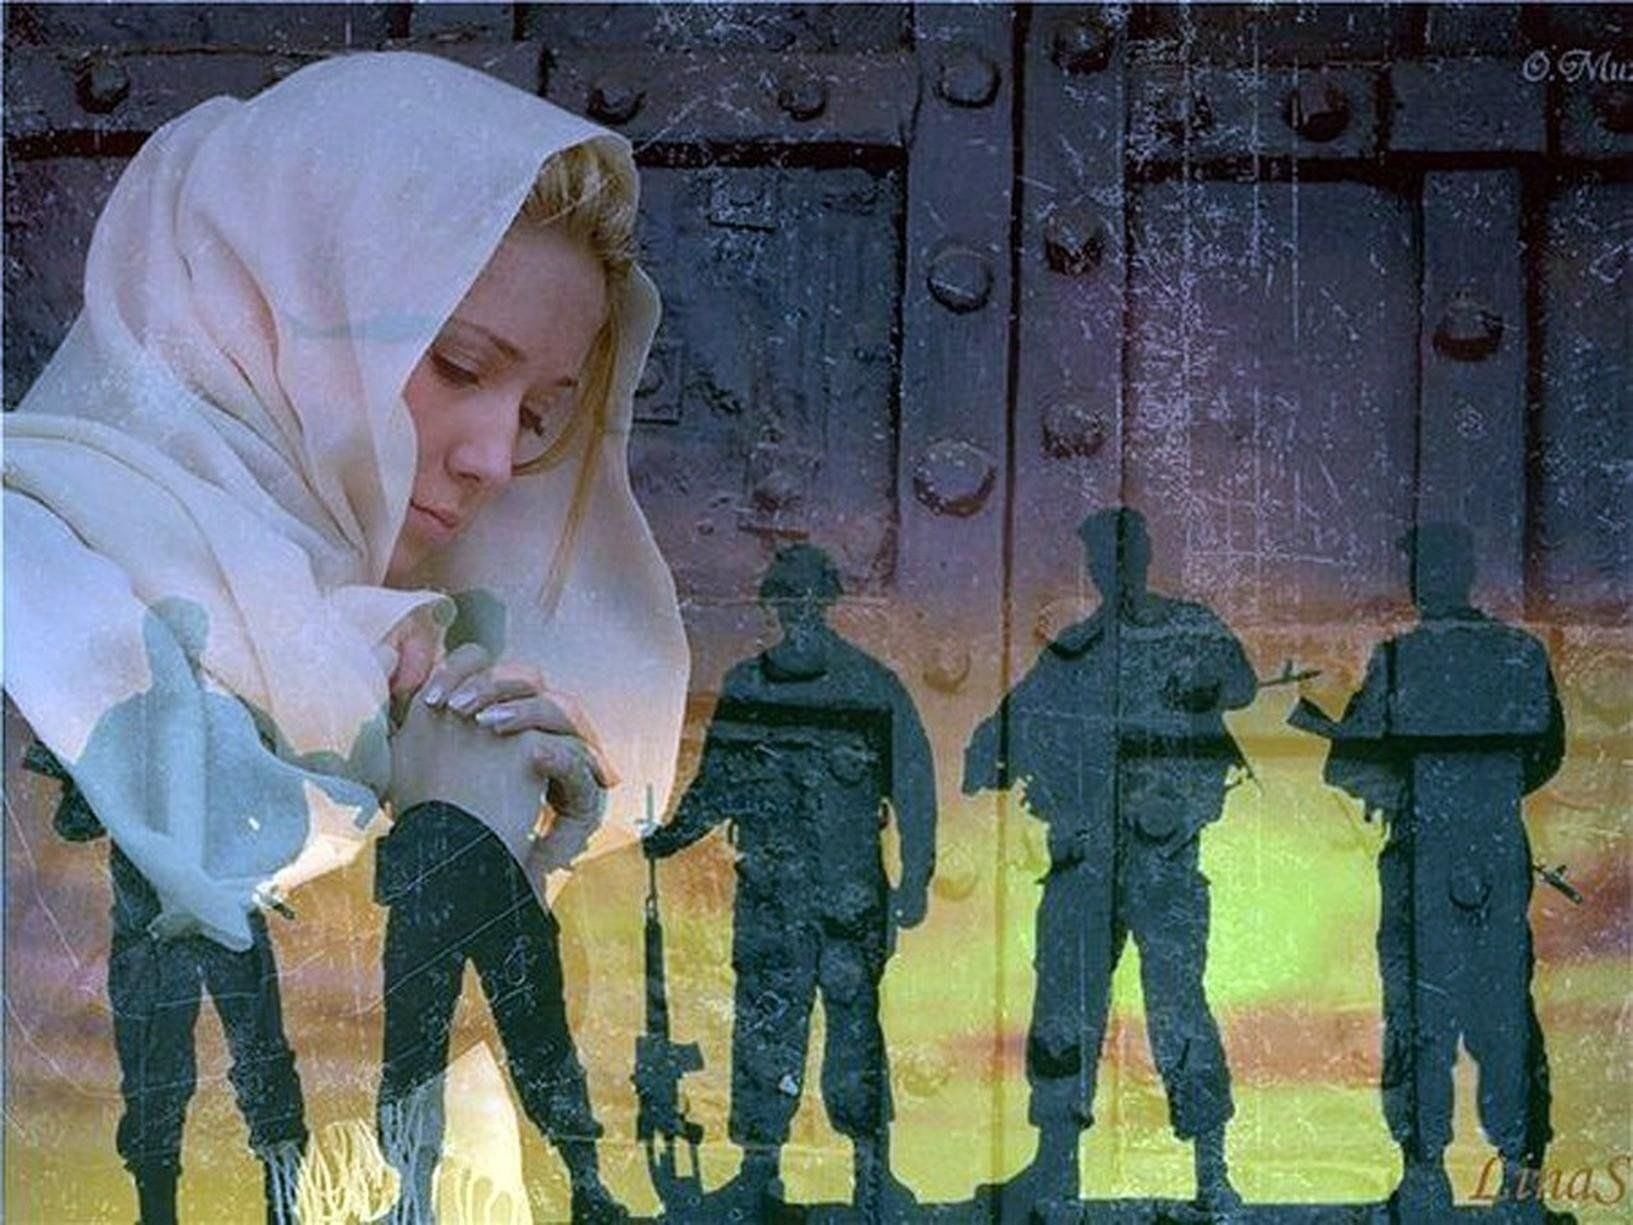 Молитва матери за воина на войне